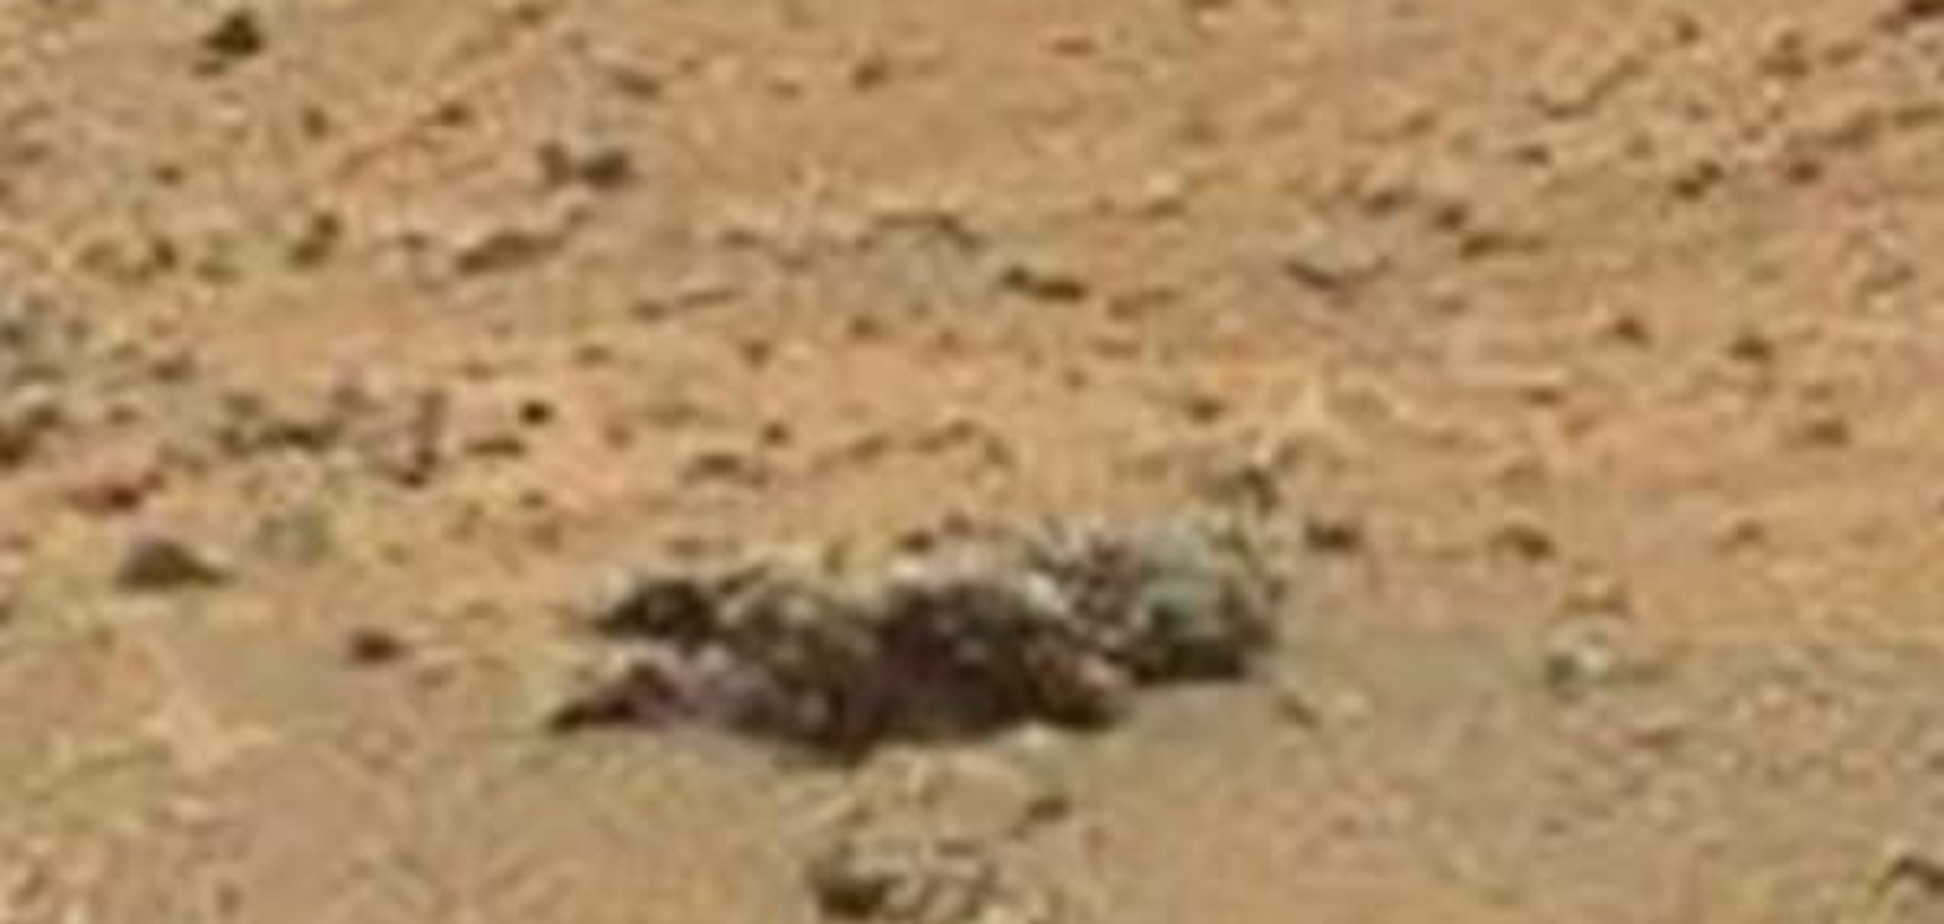 Есть ли жизнь на Марсе? Среди скал Красной планеты увидели труп ребенка: видеофакт